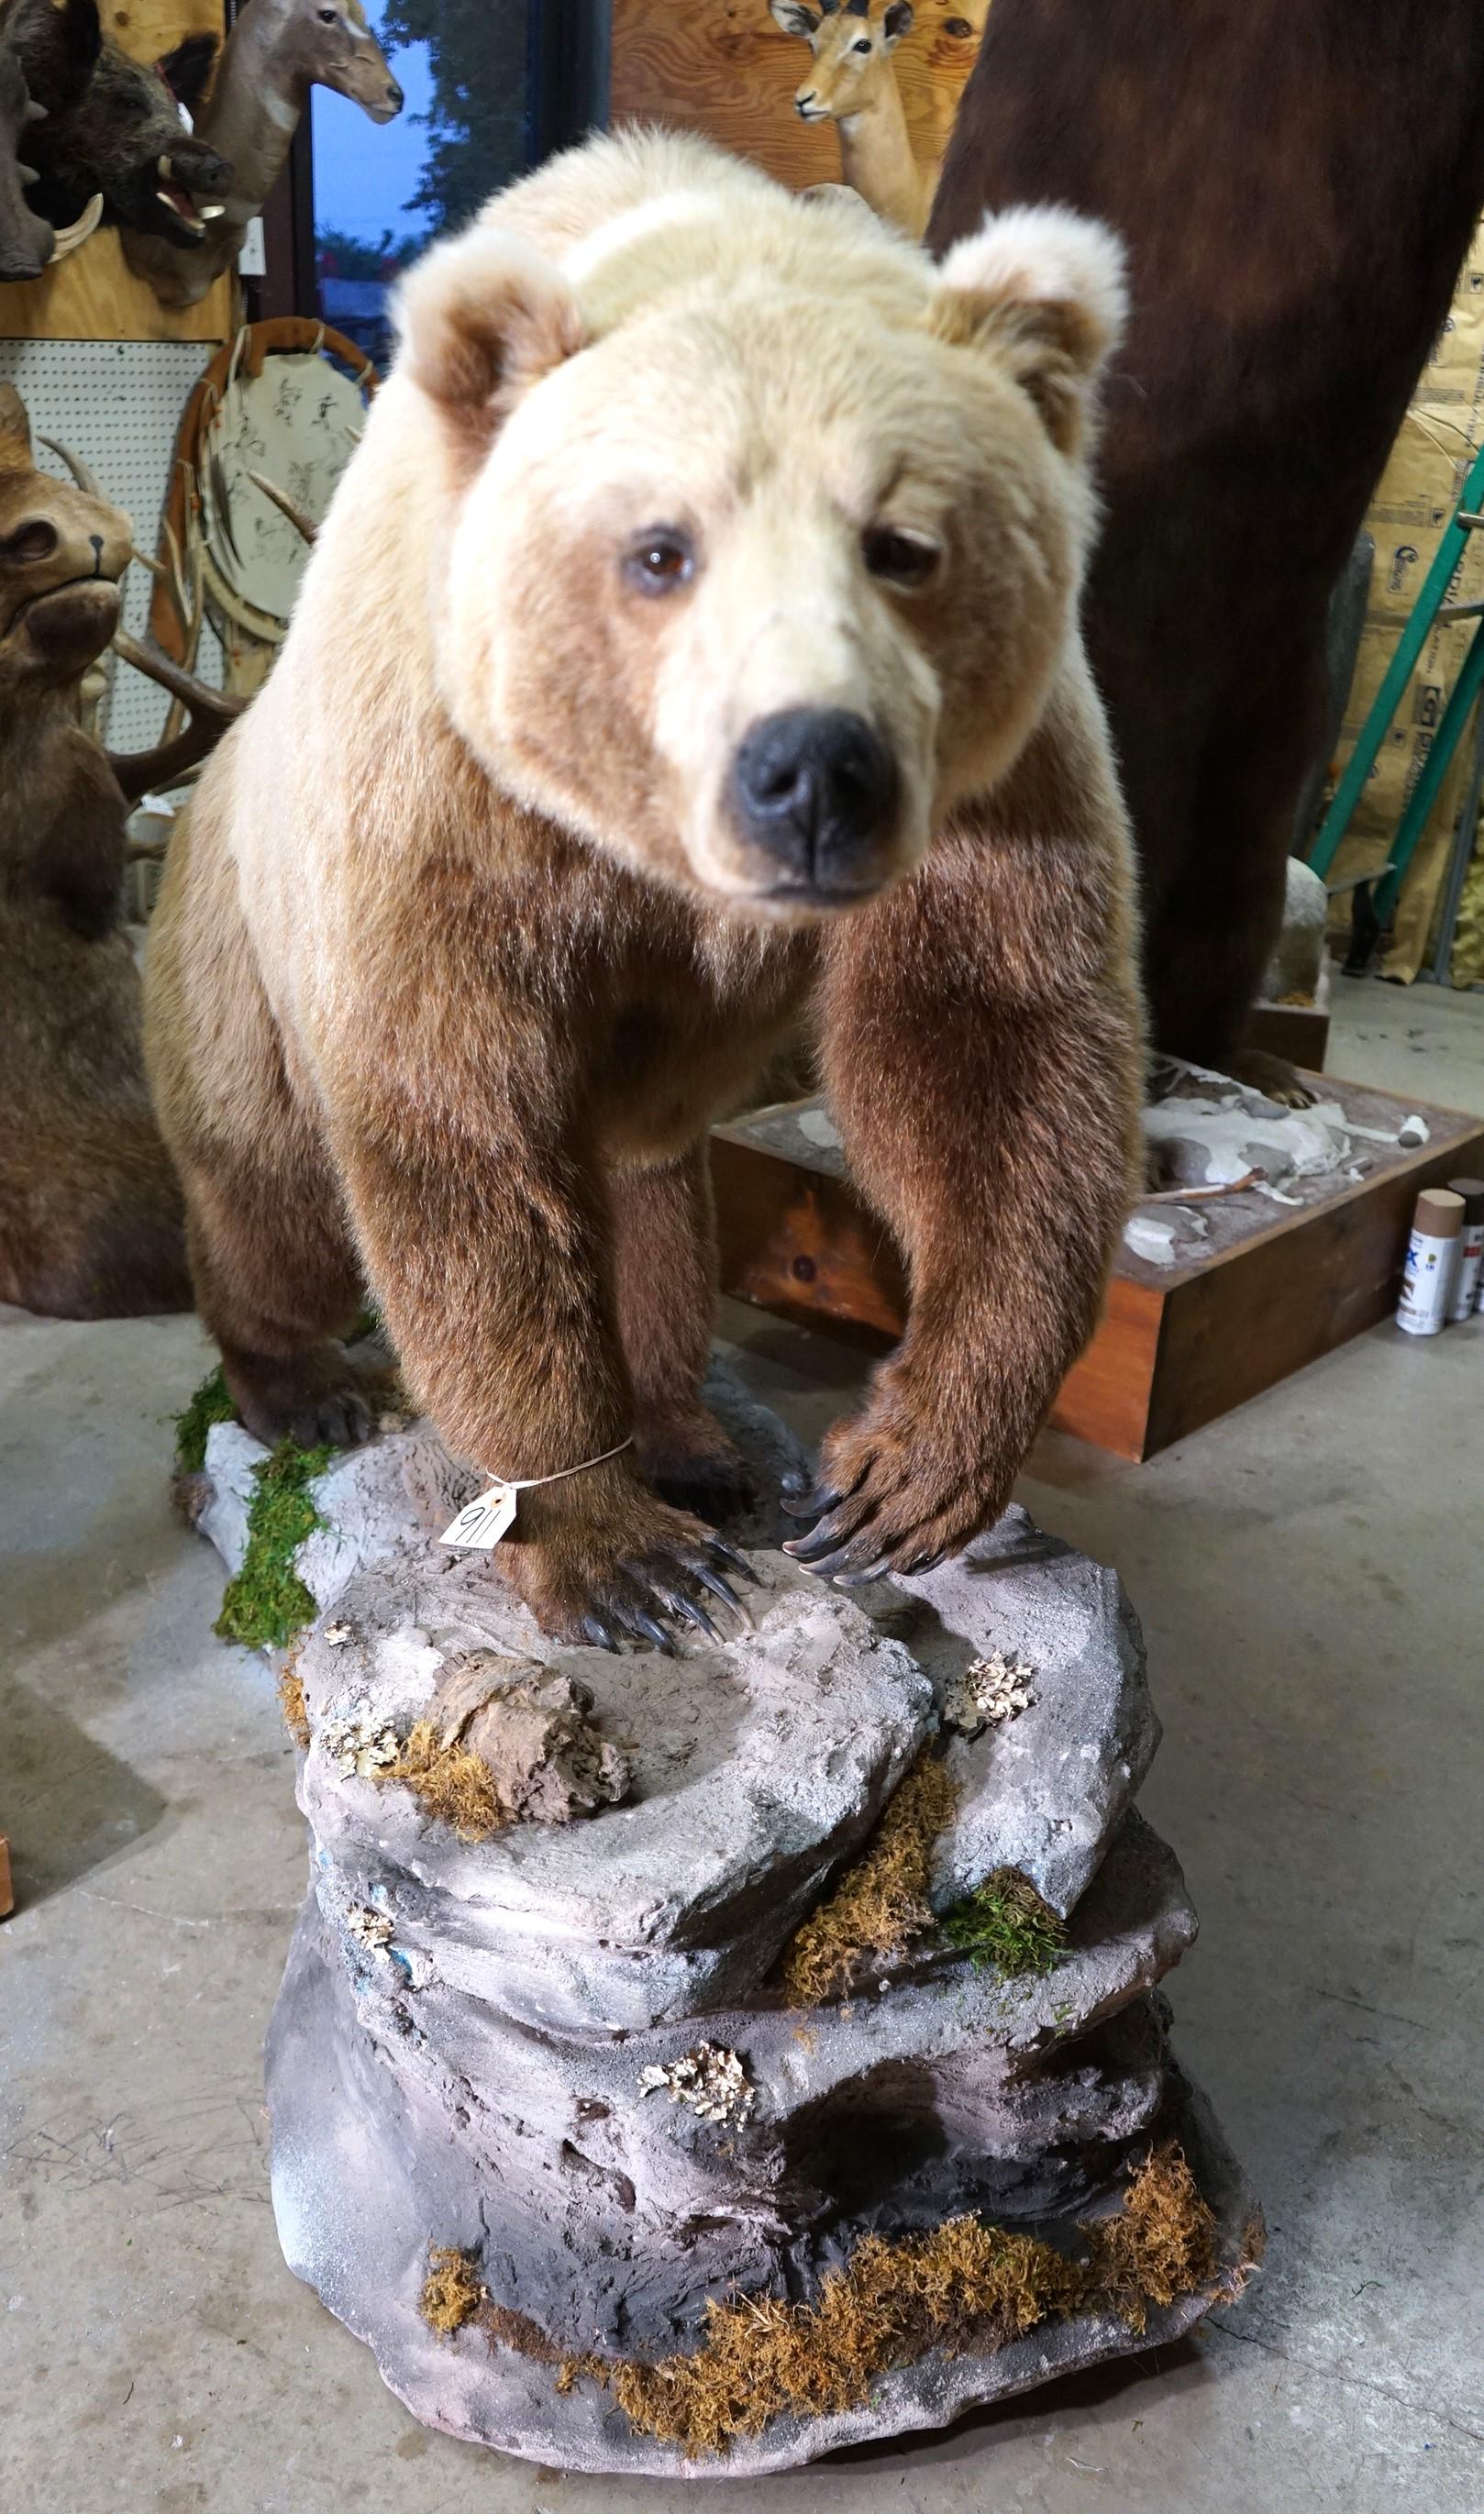 Full Body Walking Alaskan Brown Bear in Habitat Taxidermy Mount